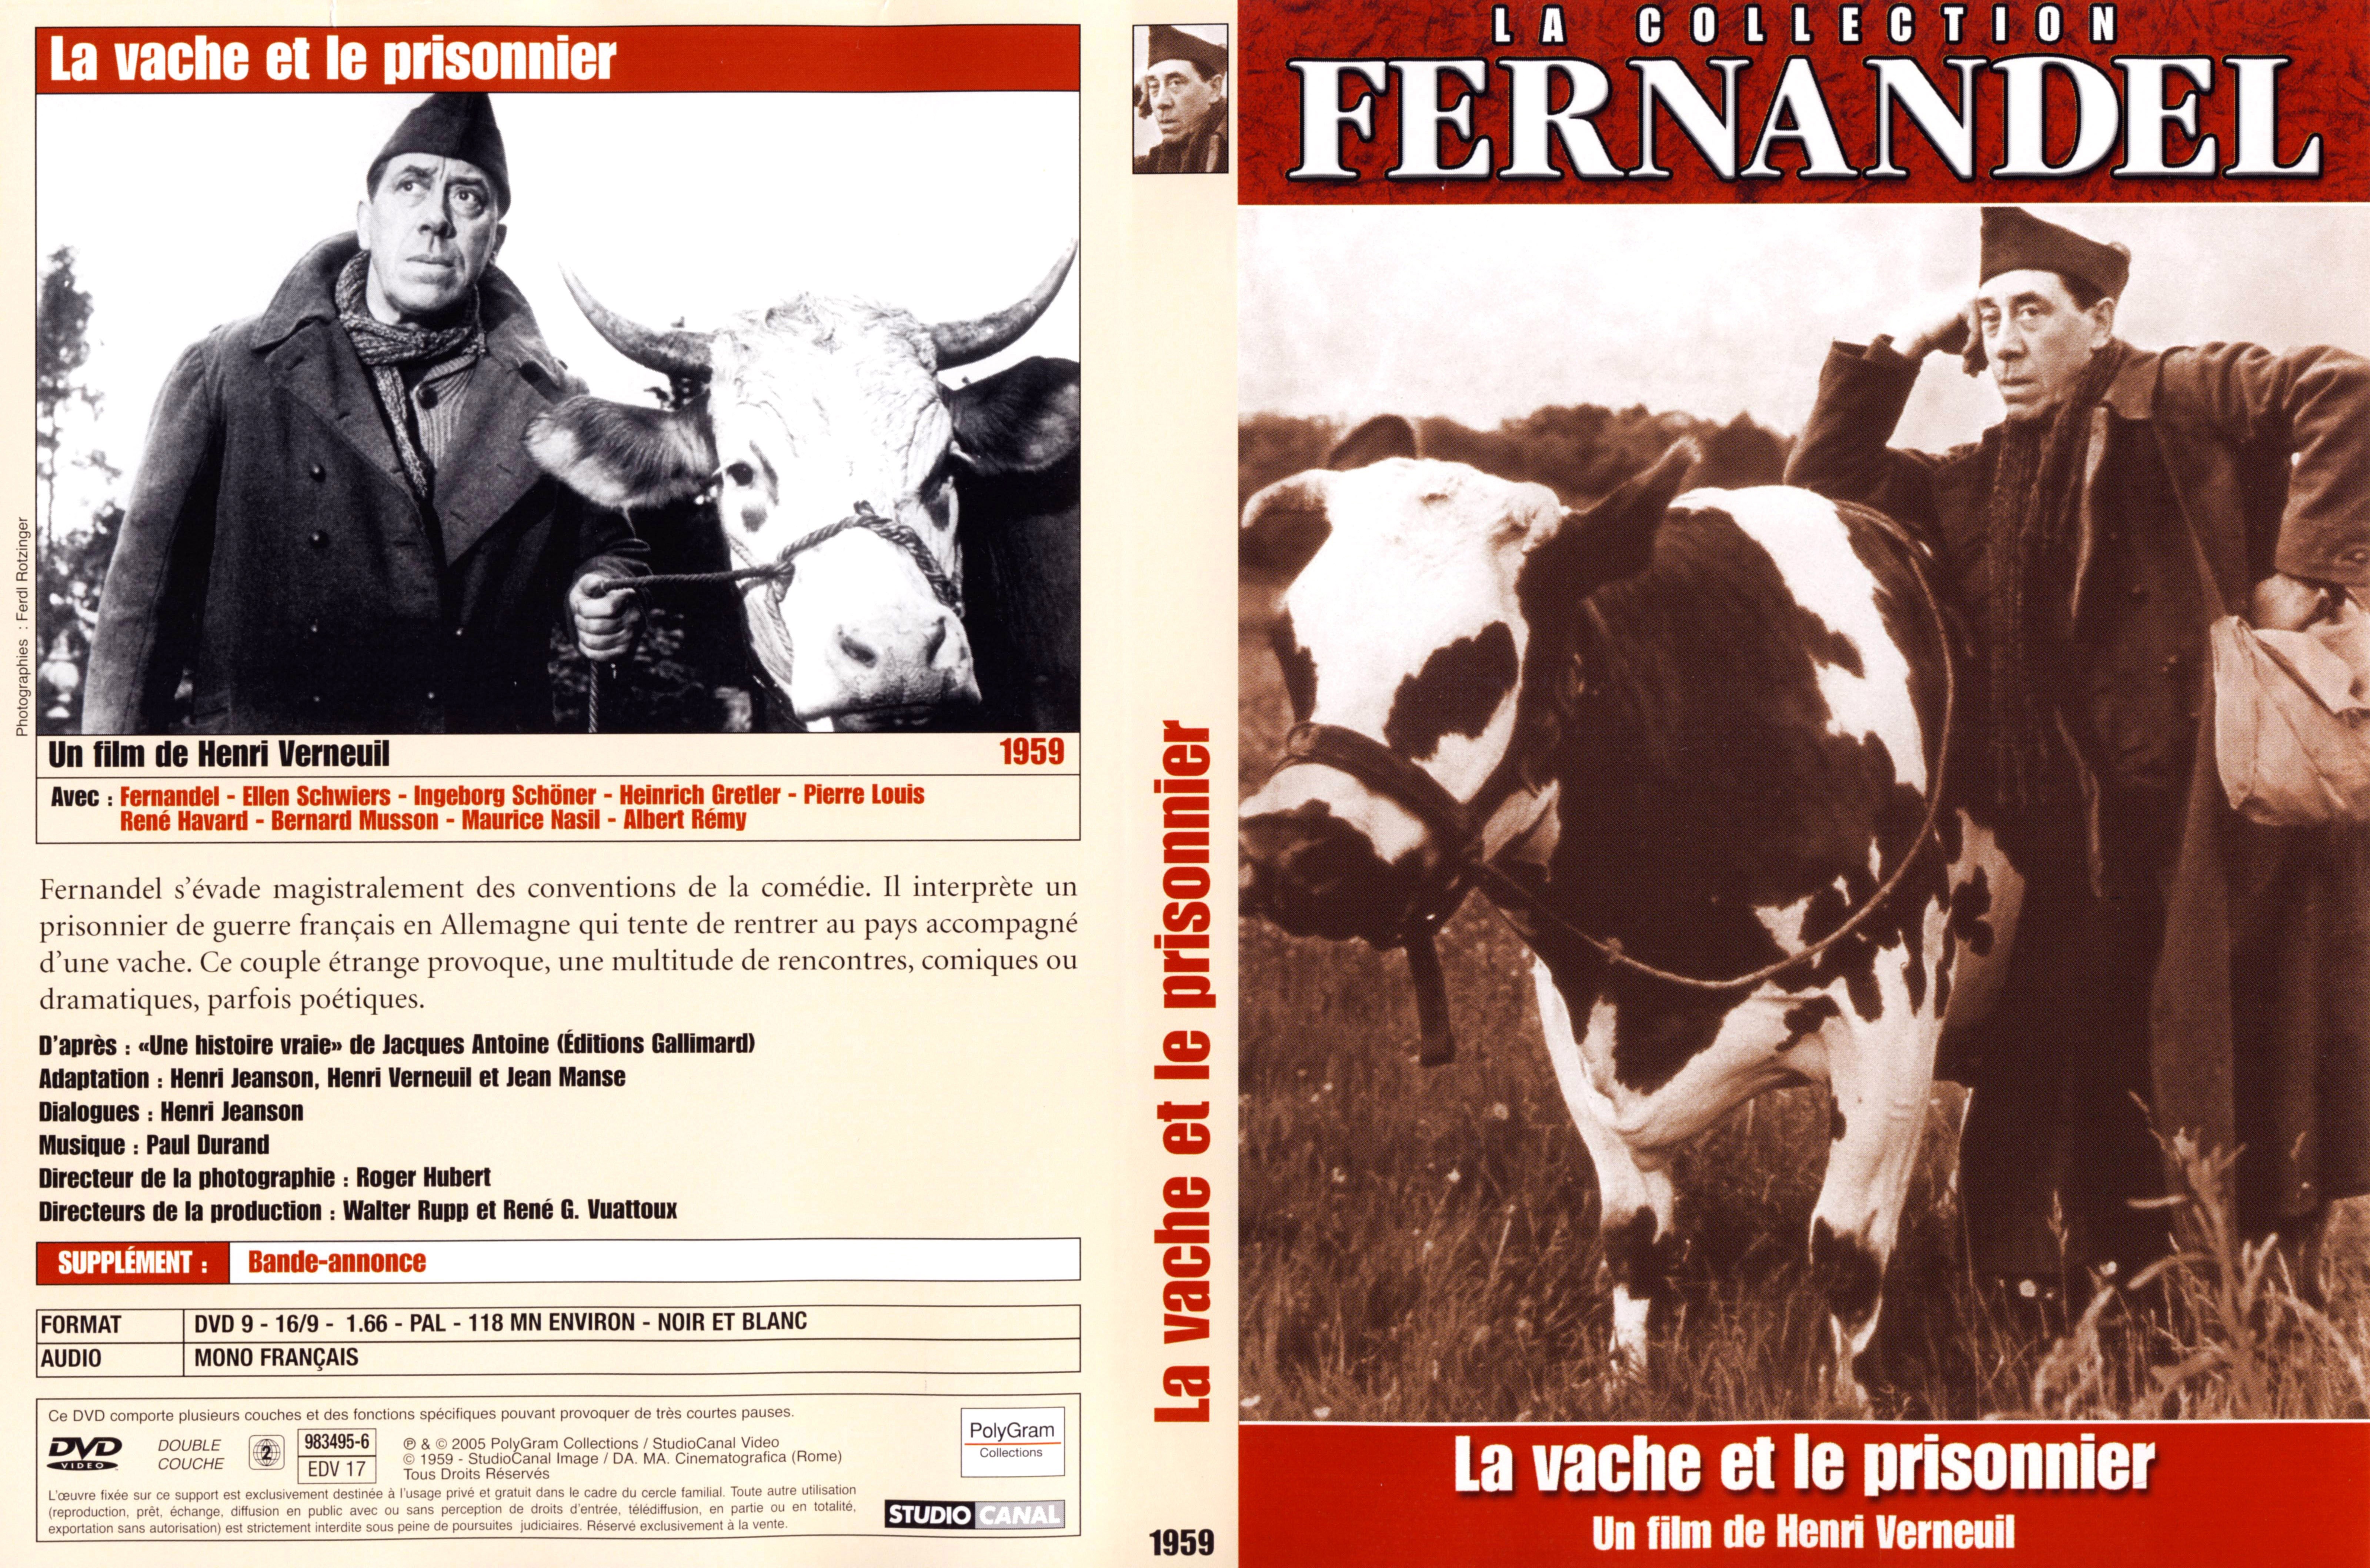 Jaquette DVD La vache et le prisonnier v3